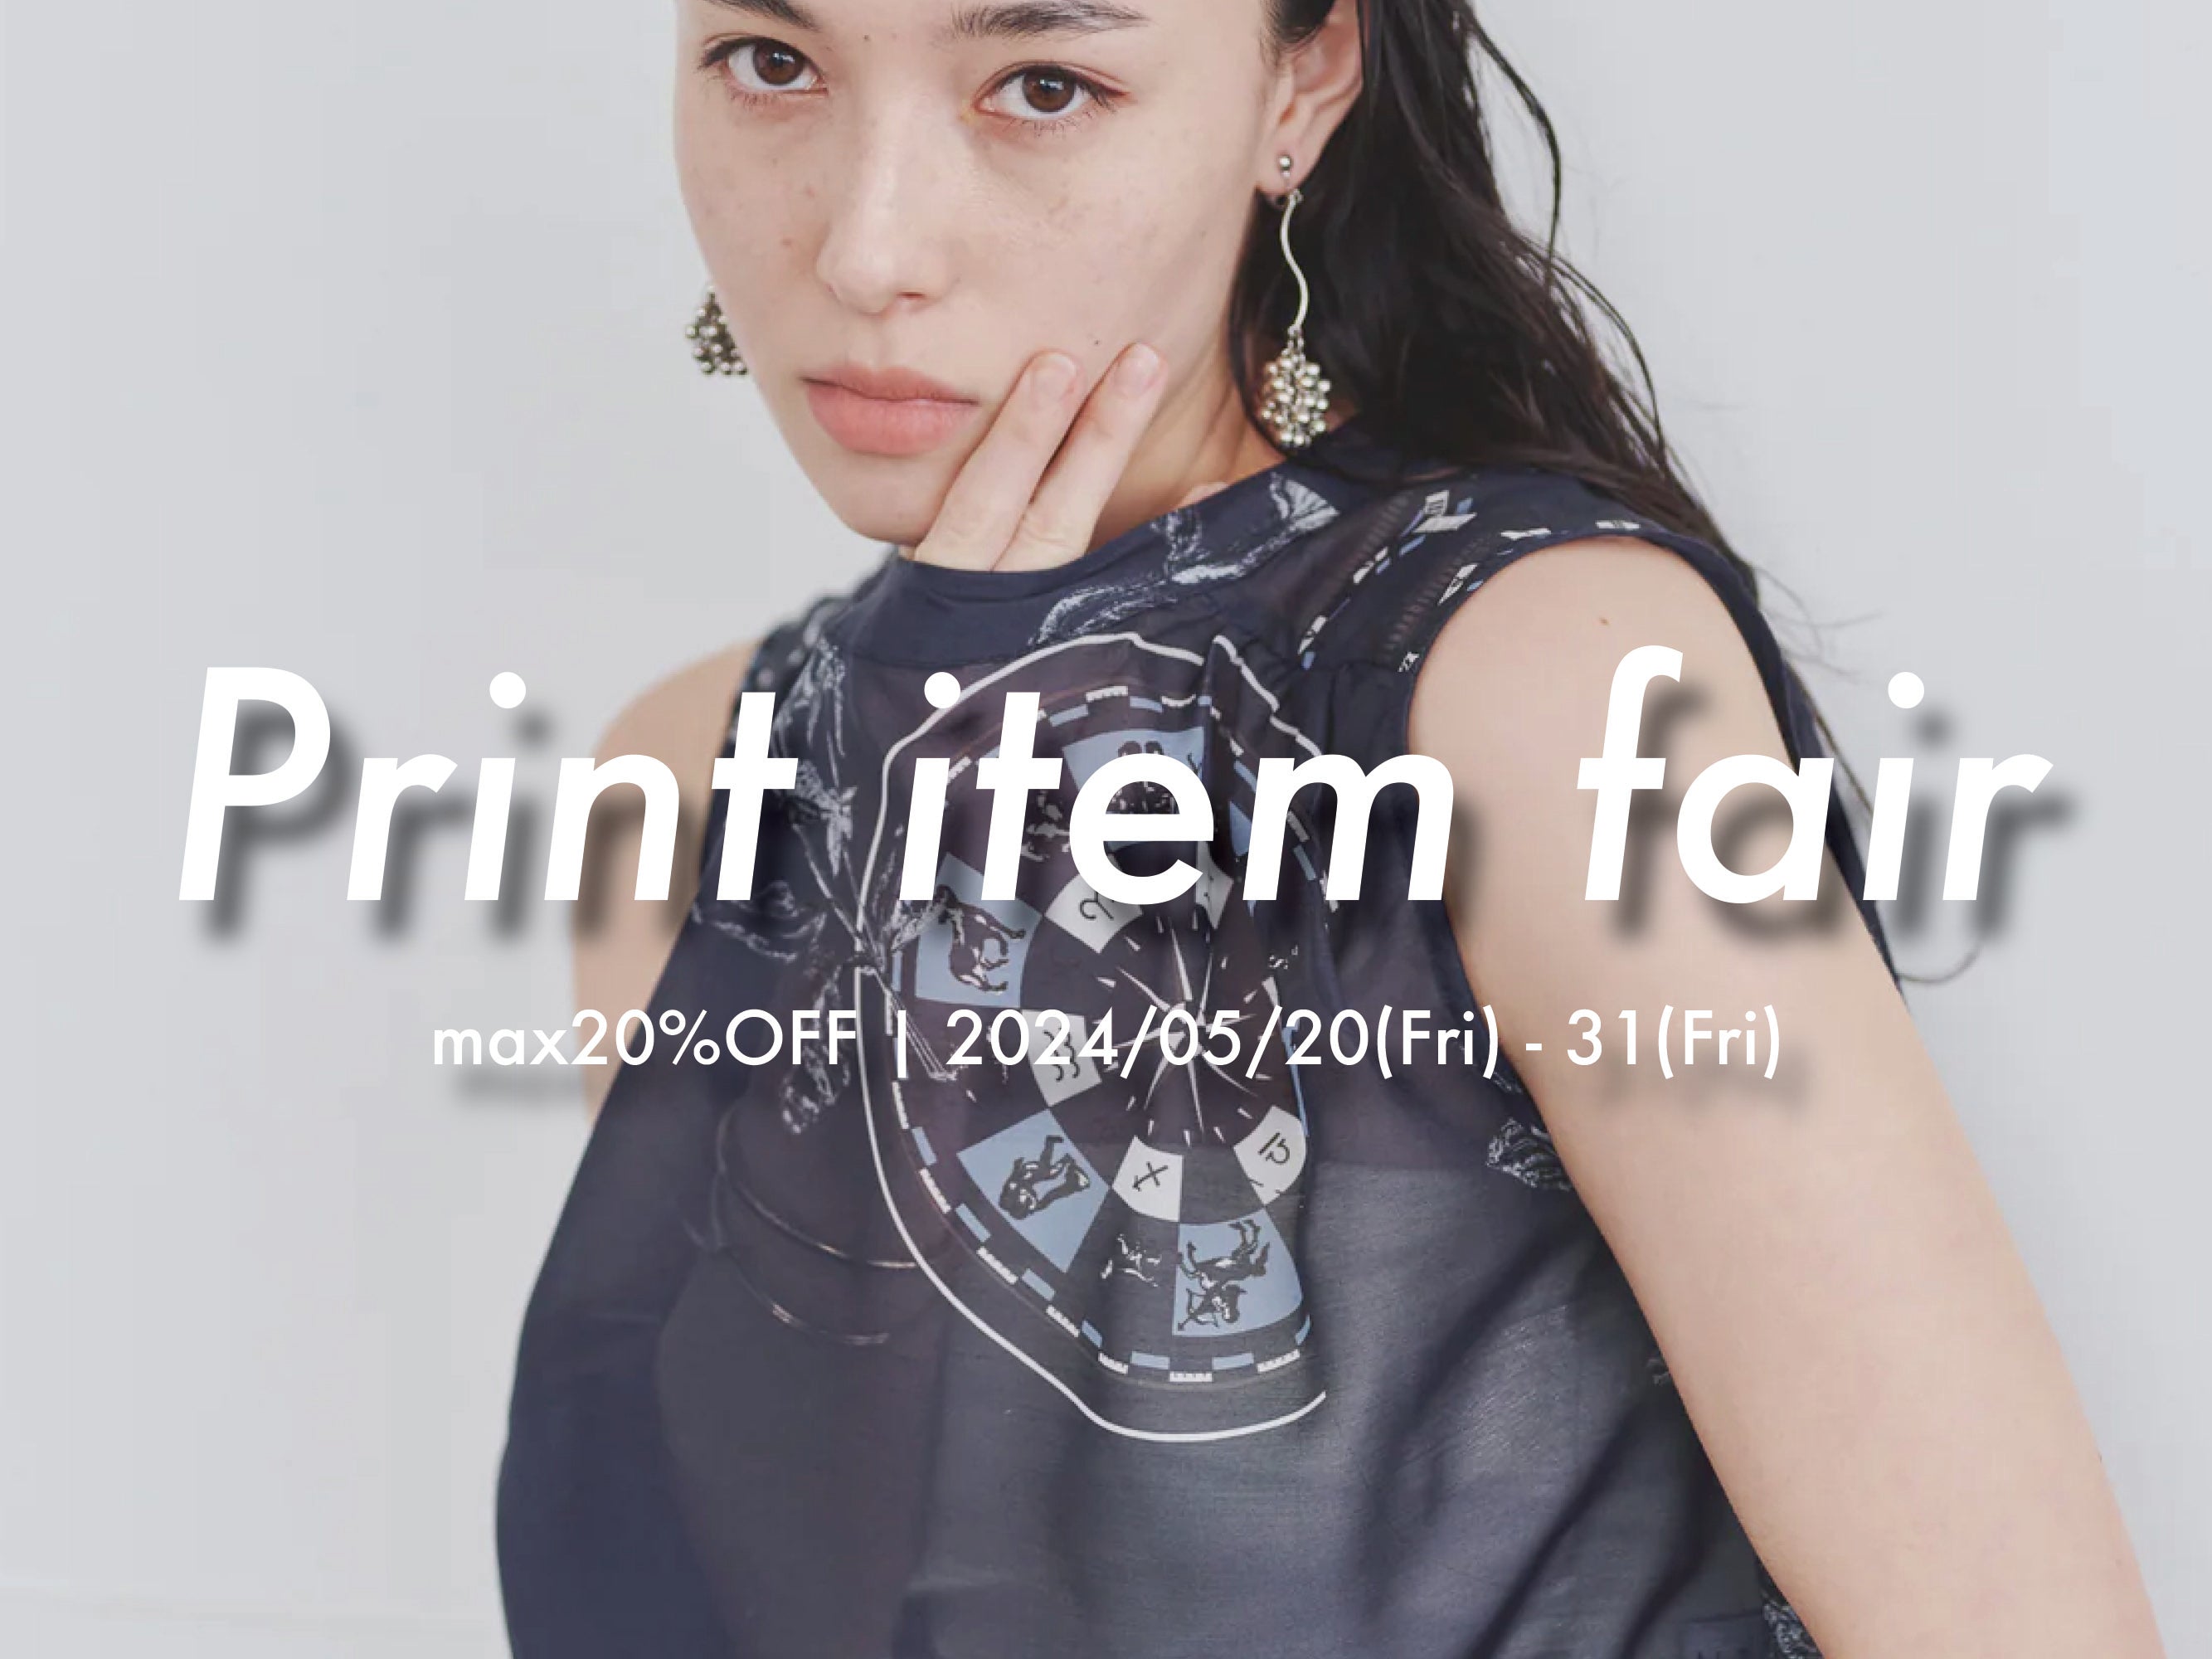 Print item fair